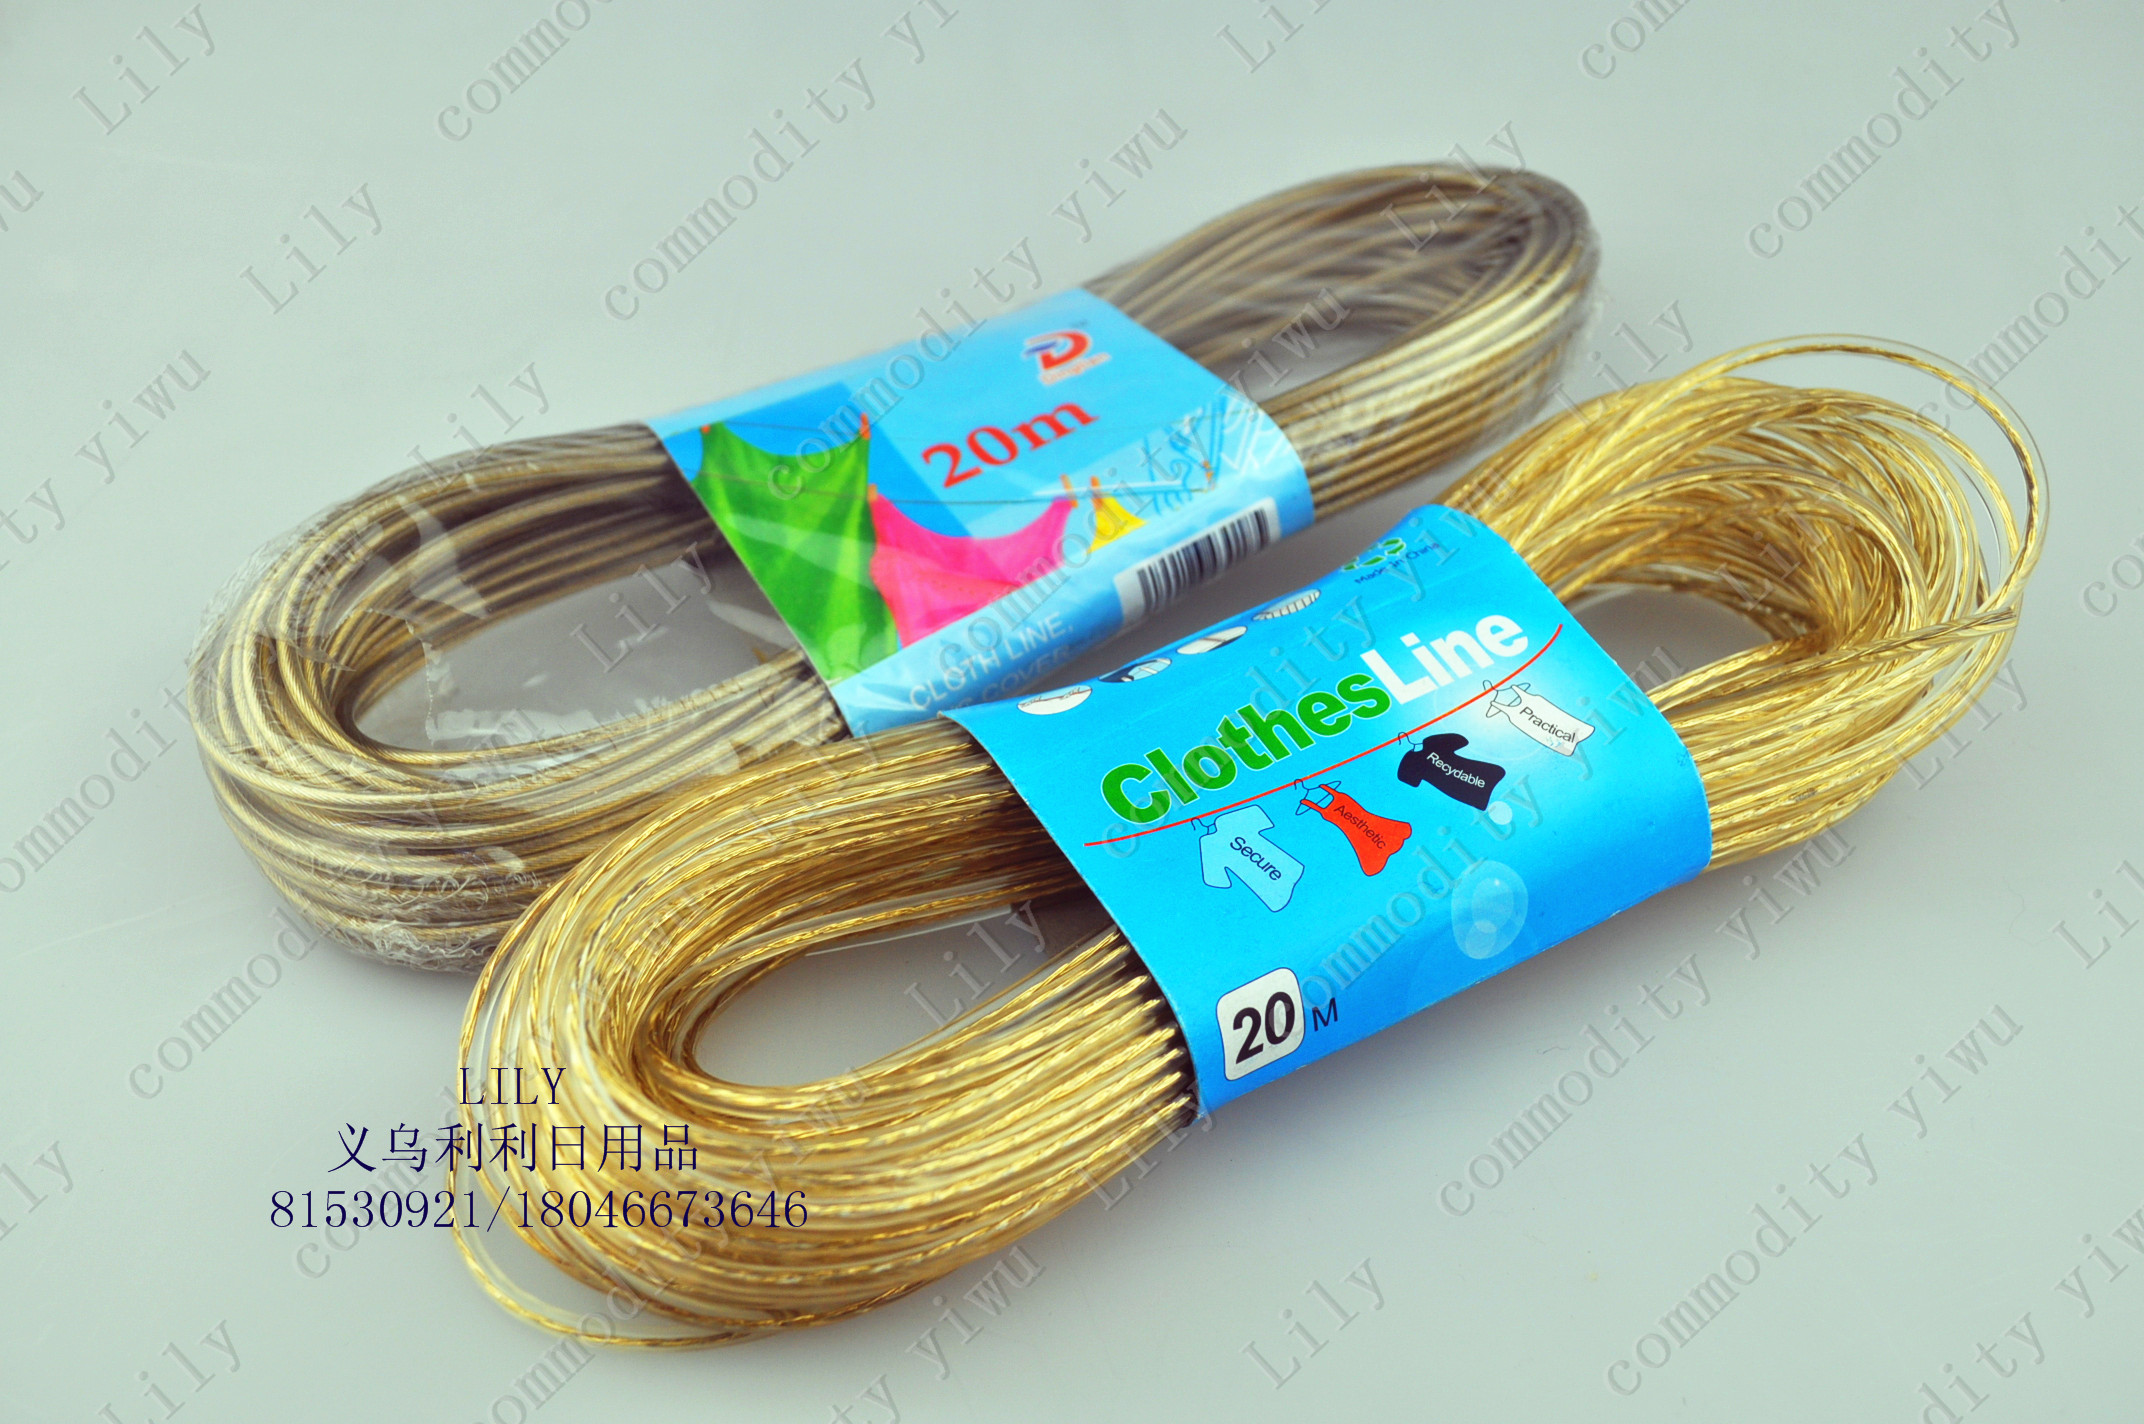 供应家具用品防滑晾衣绳 钢丝绳 纤维绳 晾衣绳厂家直销20M